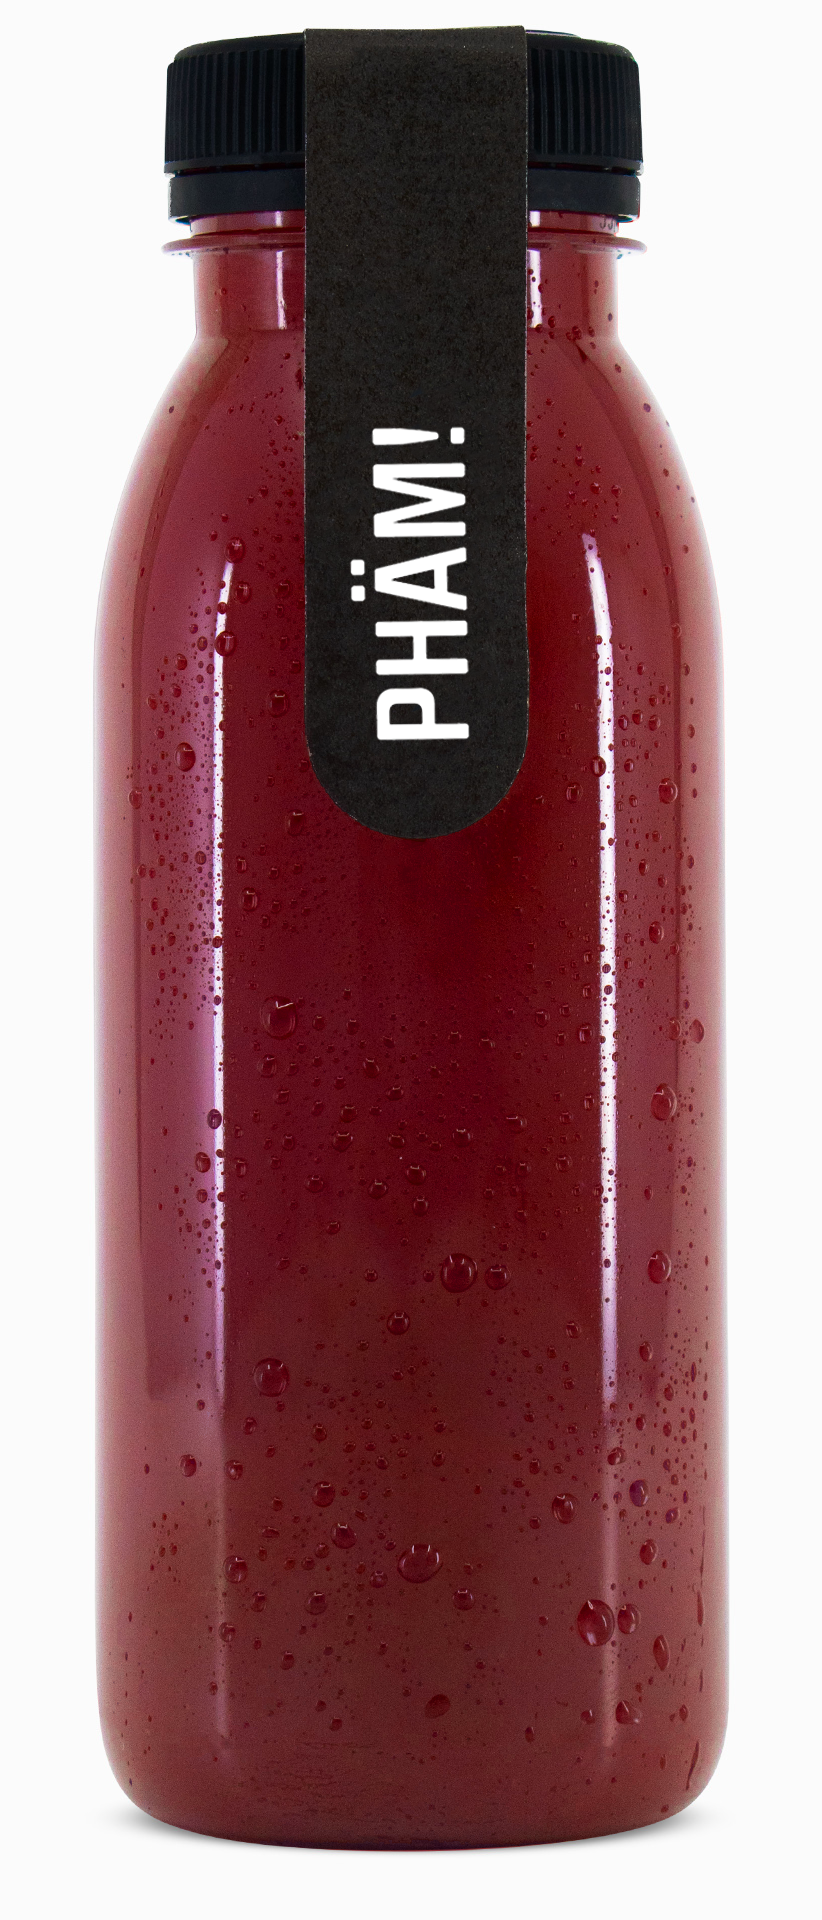 Phäm! – Bio-Smoothie aus Grapefruit, Traube, Himbeere und Rande in 270ml Glasflasche. 